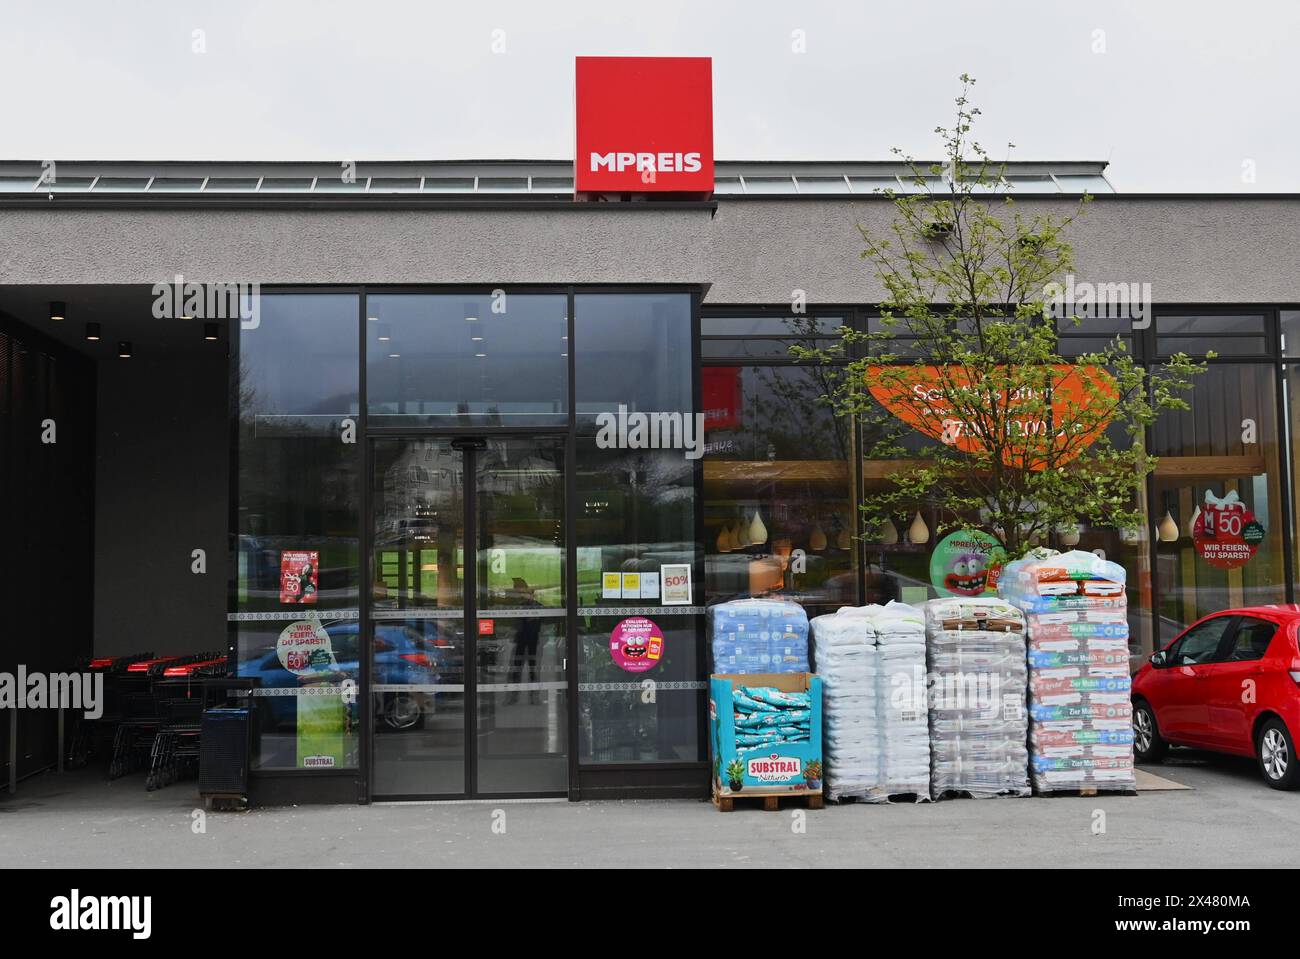 MPREIS Supermarkt - Discounter in Tirol, Austria. M PREIS ist eine österreichische Supermarktkette im Salzburger Land, Kärnten, Vorarlberg, Tirol und Südtirol. Das Unternehmen wurde im Jahr 1920 von Therese Moelk gegründet. Als GmbH wurde M PREIS 1974 gegründet und betreibt über 250 Märkte sowie rund 160 Baguette-Bistros bzw Cafe - Niederlassungen. Zum Unternehmen gehört auch ein Bäckerei-Produktionsbetrieb und eine Metzgerei mit Wursterzeugung. Firmensitz und Logistikzentrum mit Lager und eigenem Fuhrpark befinden sich in Völs, in der Nähe von Innsbruck *** MPREIS supermarket discounter in Ty Stock Photo